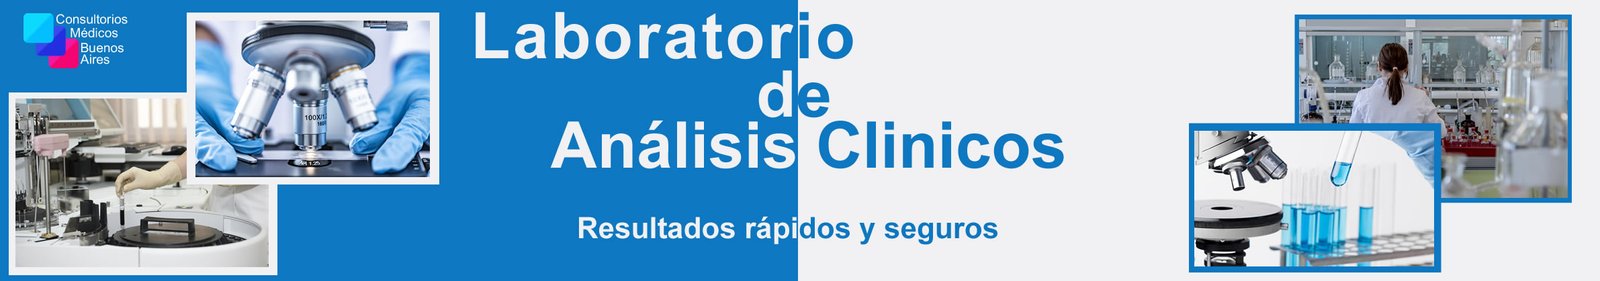 Consultorios Medicos Buenos Aires